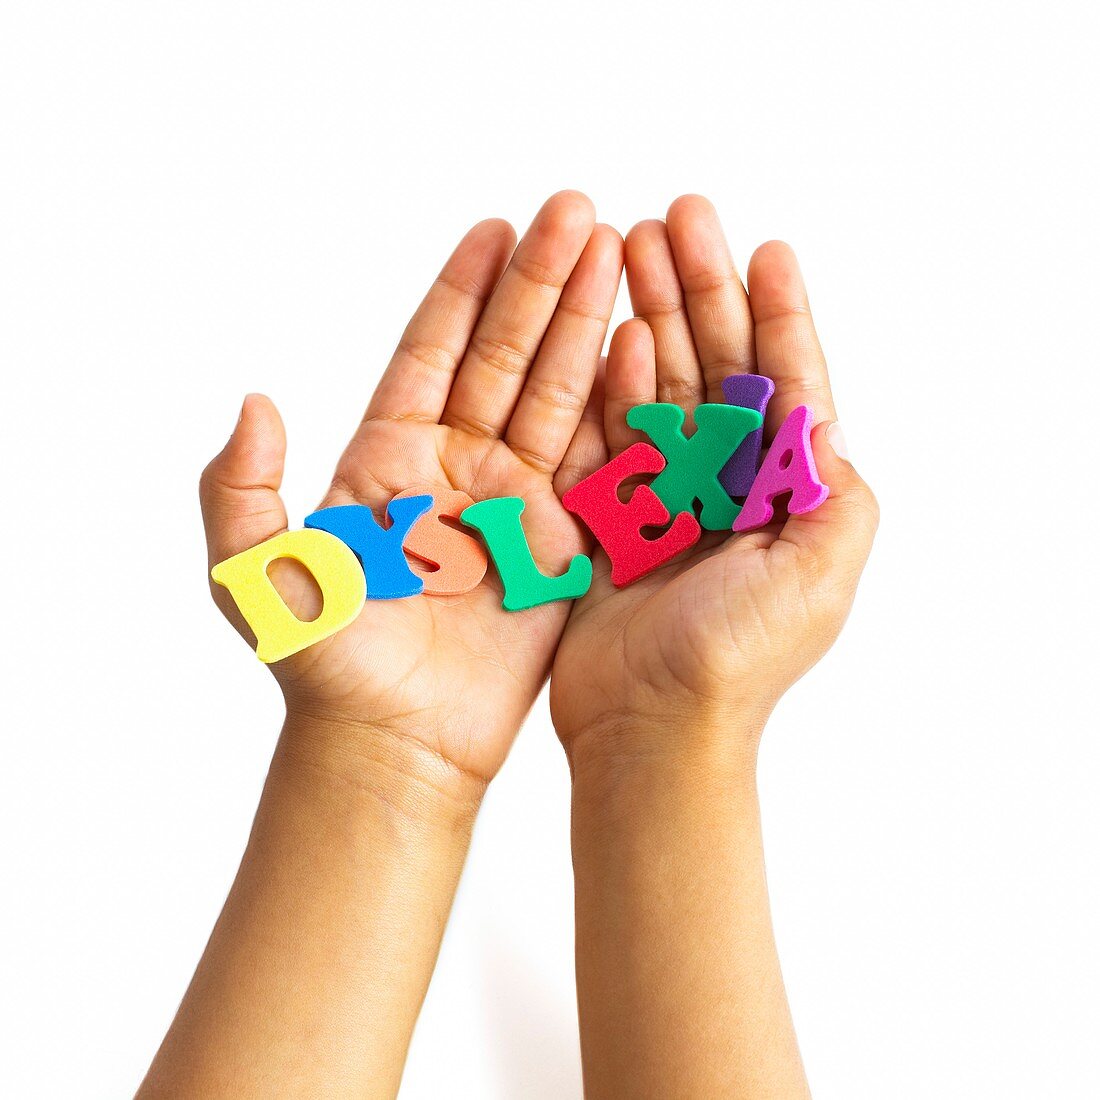 Dyslexia,conceptual image